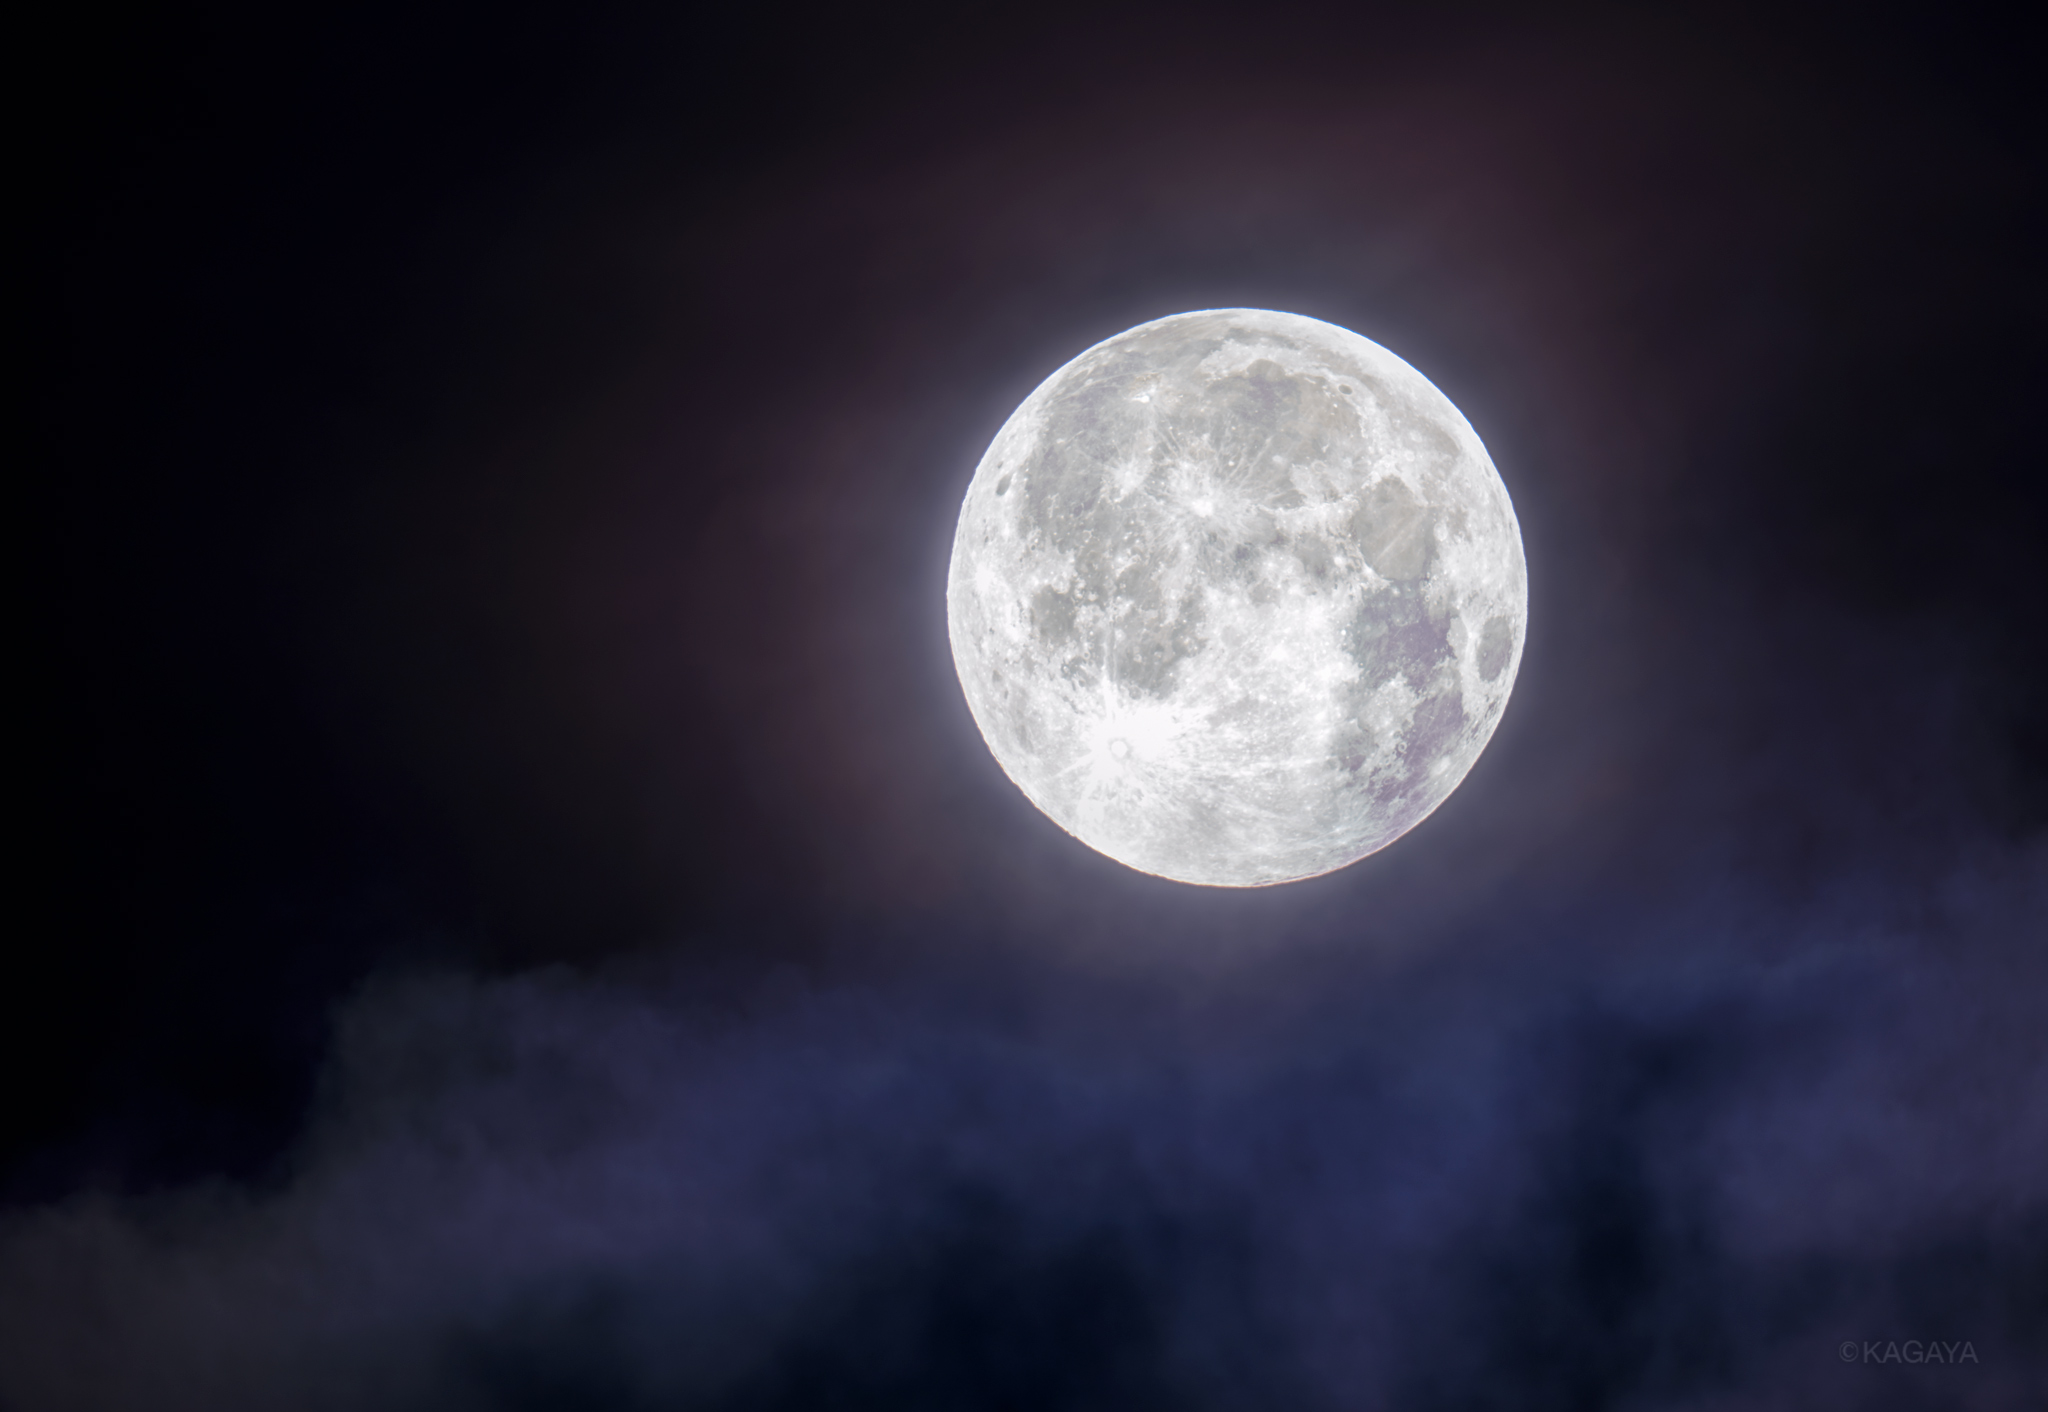 Kagaya 先ほど ほぼ満月の瞬間に撮影した月です このあとすぐ雲の中に潜って見えなくなりました T Co 9gjzxv09a7 Twitter